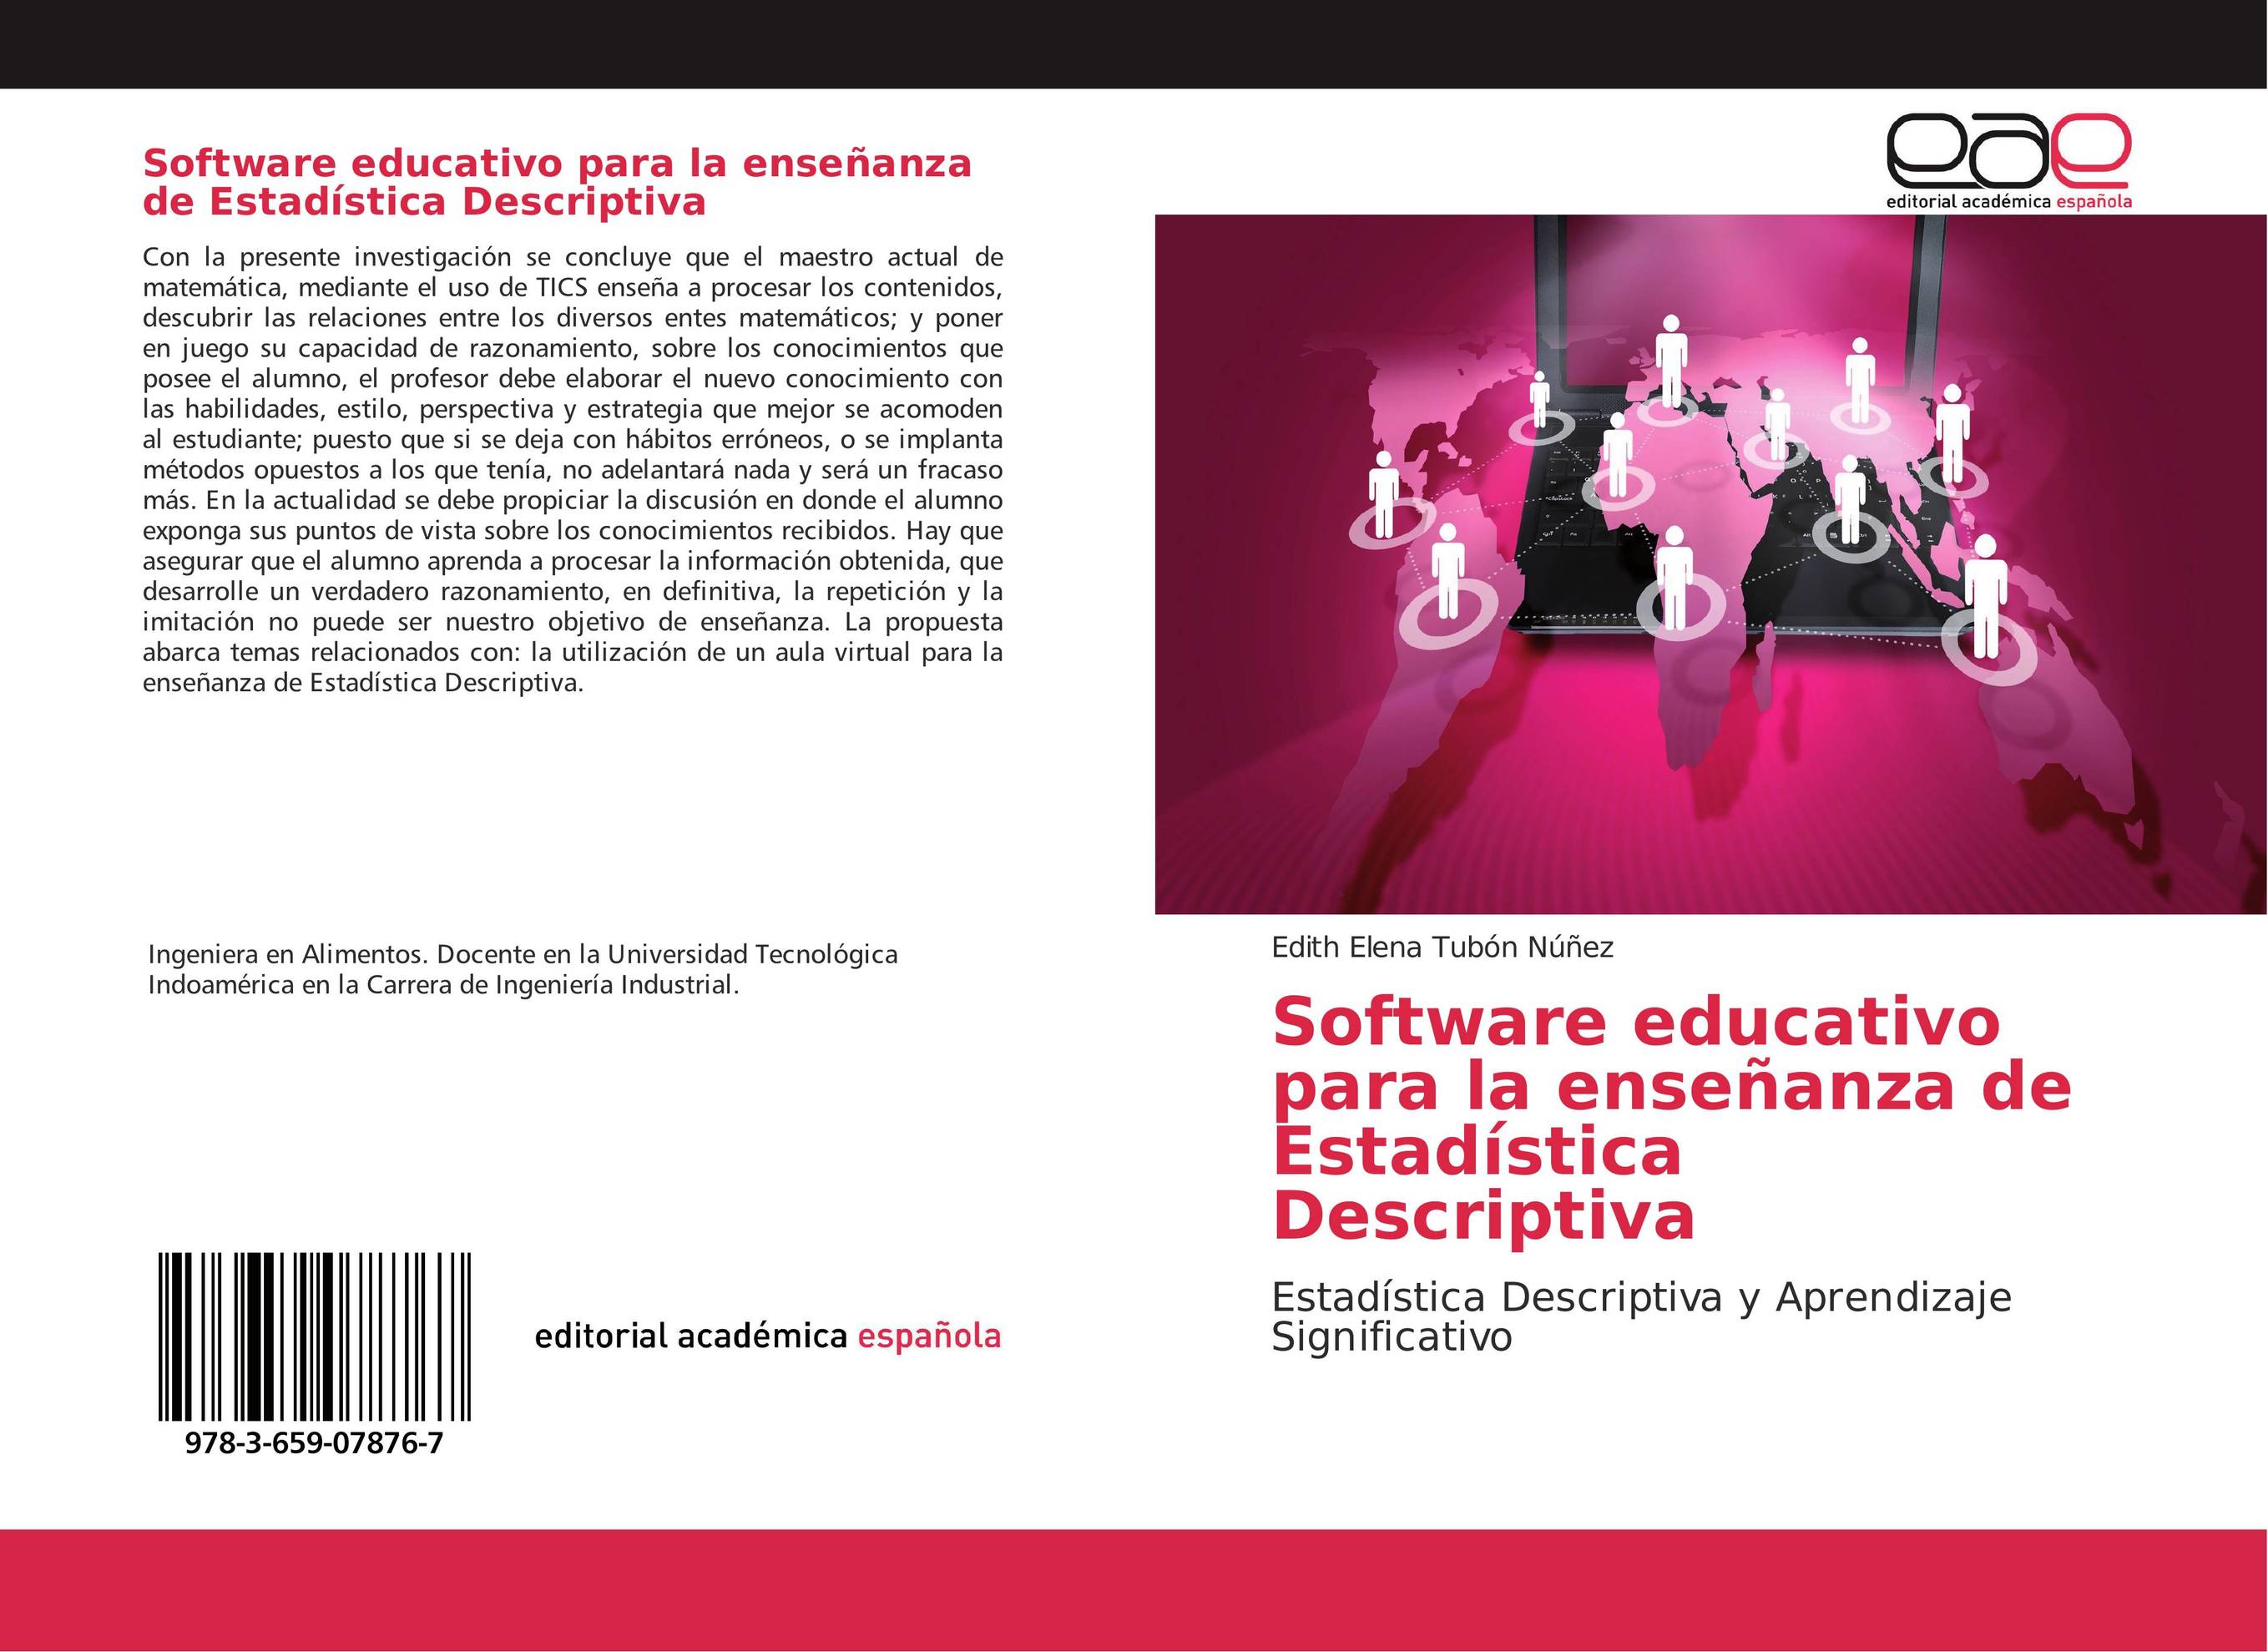 Software educativo para la enseñanza de Estadística Descriptiva